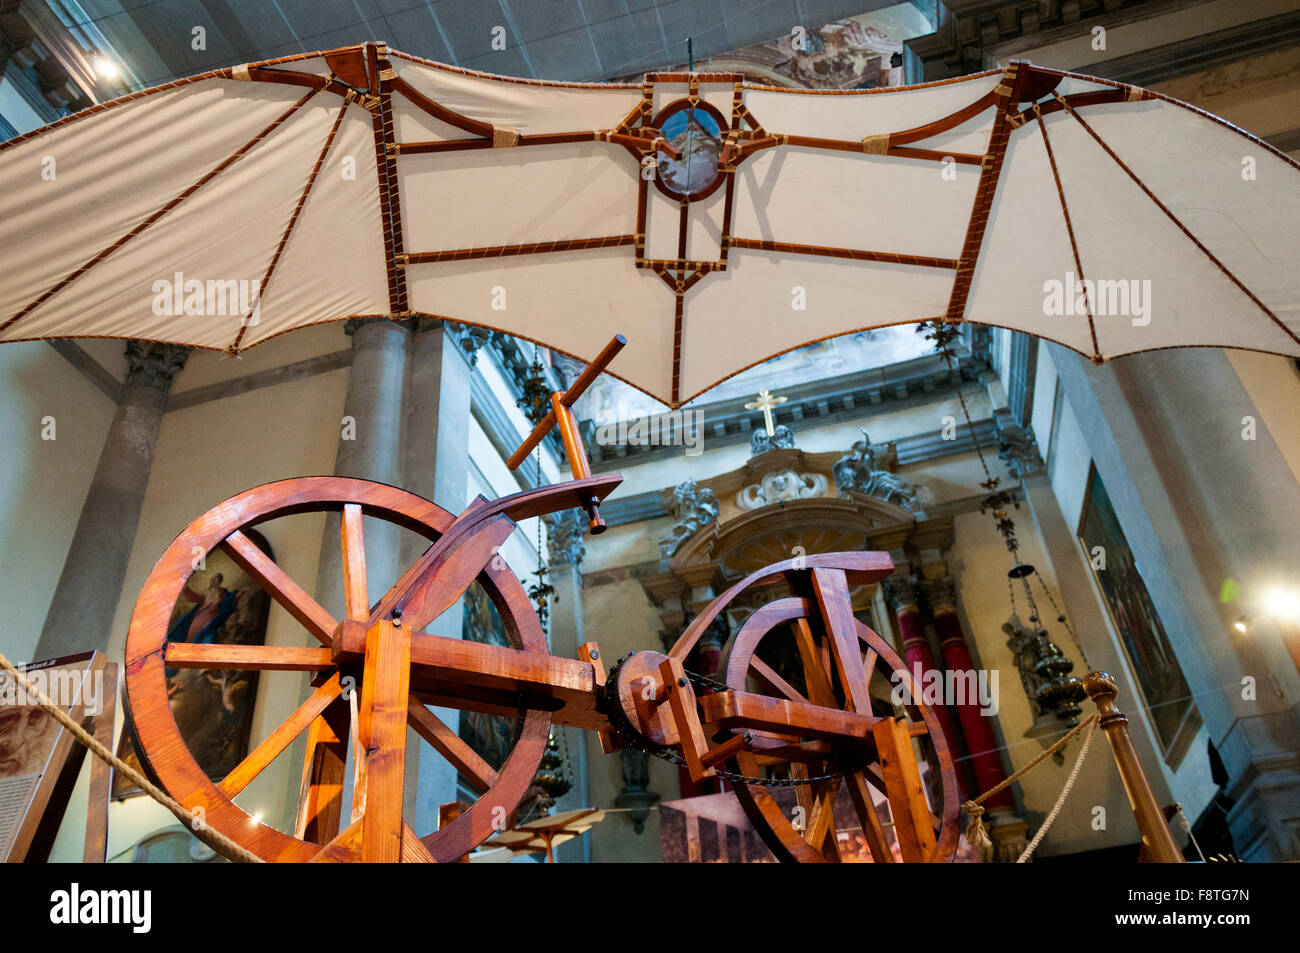 Exposition de machines Da Vinci, location illustré ici, Venise, Italie Banque D'Images